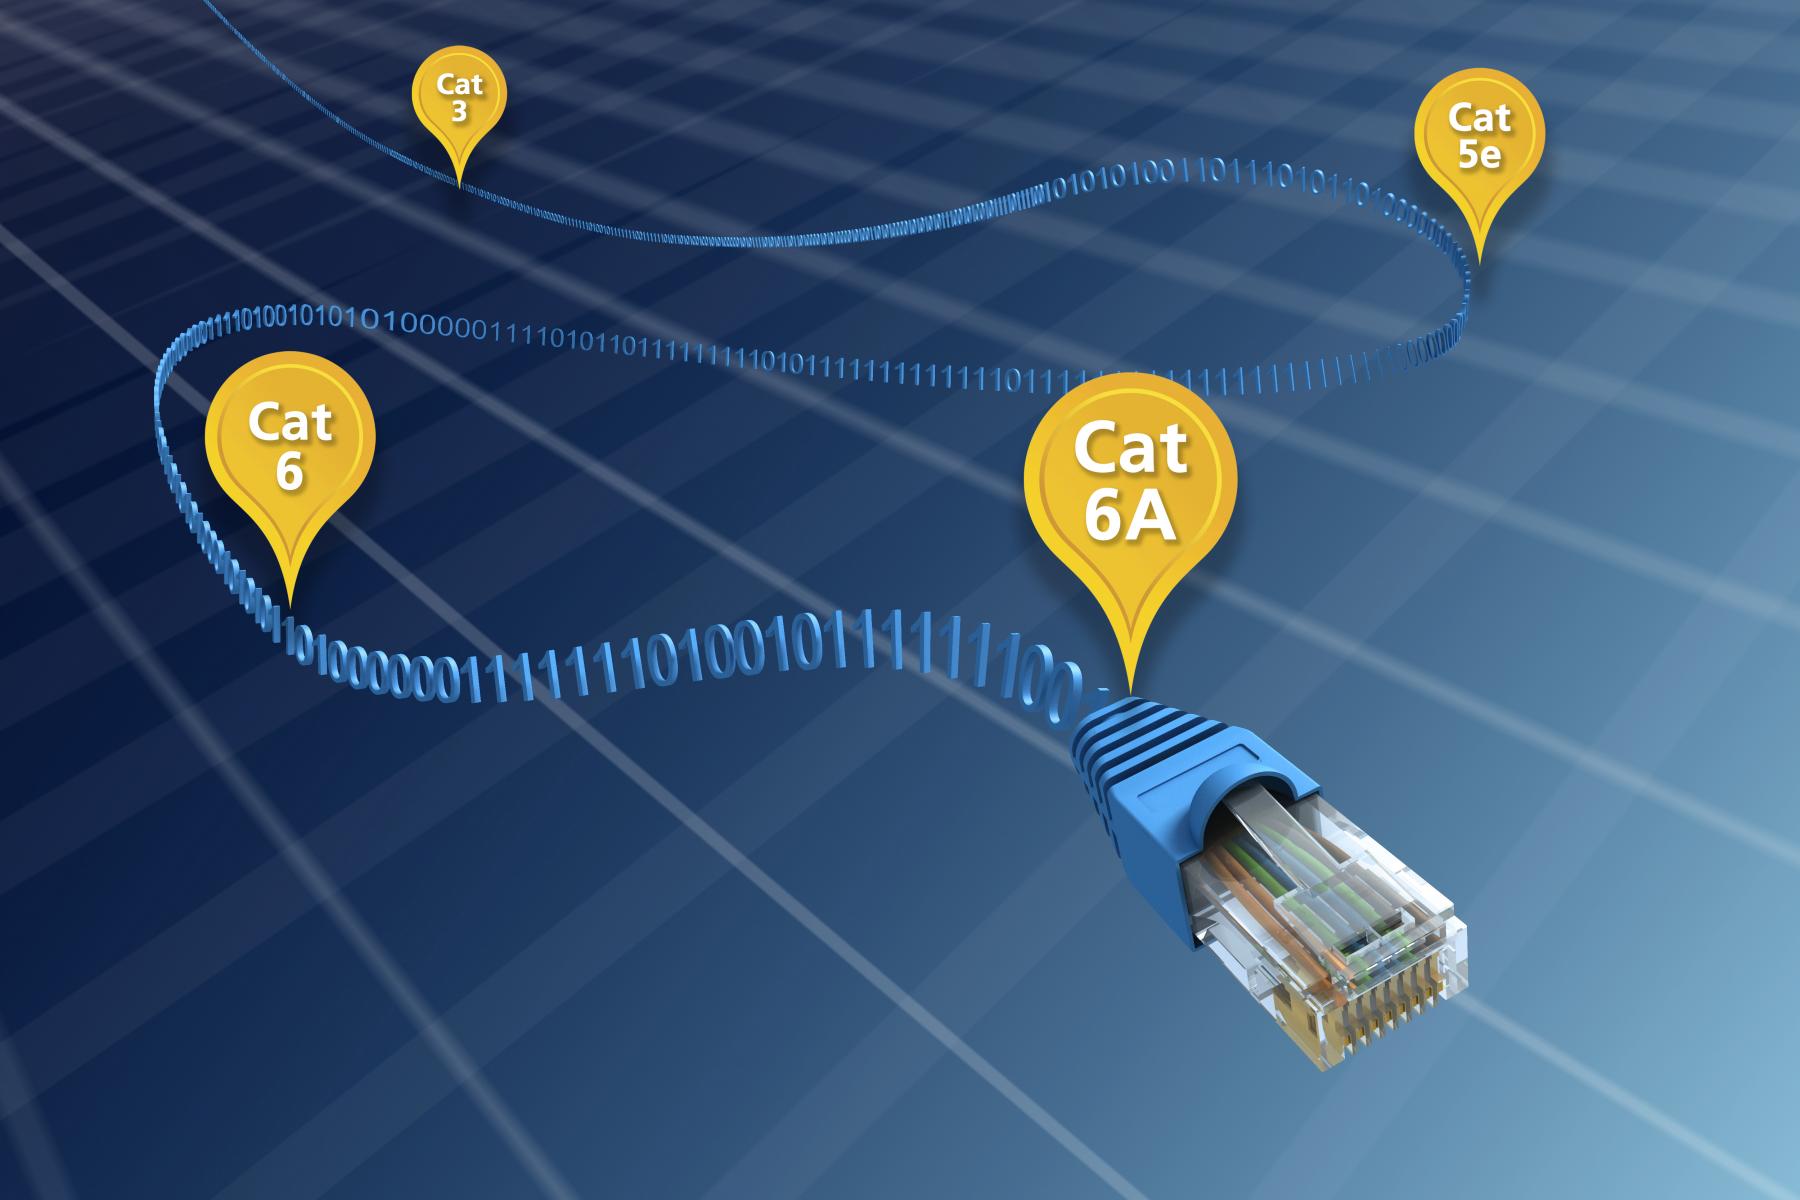 Ein blaues Kabel mit gelben Etiketten zeigt die Entwicklung des Ethernet-Kabels von Cat 3 zu Cat 6A